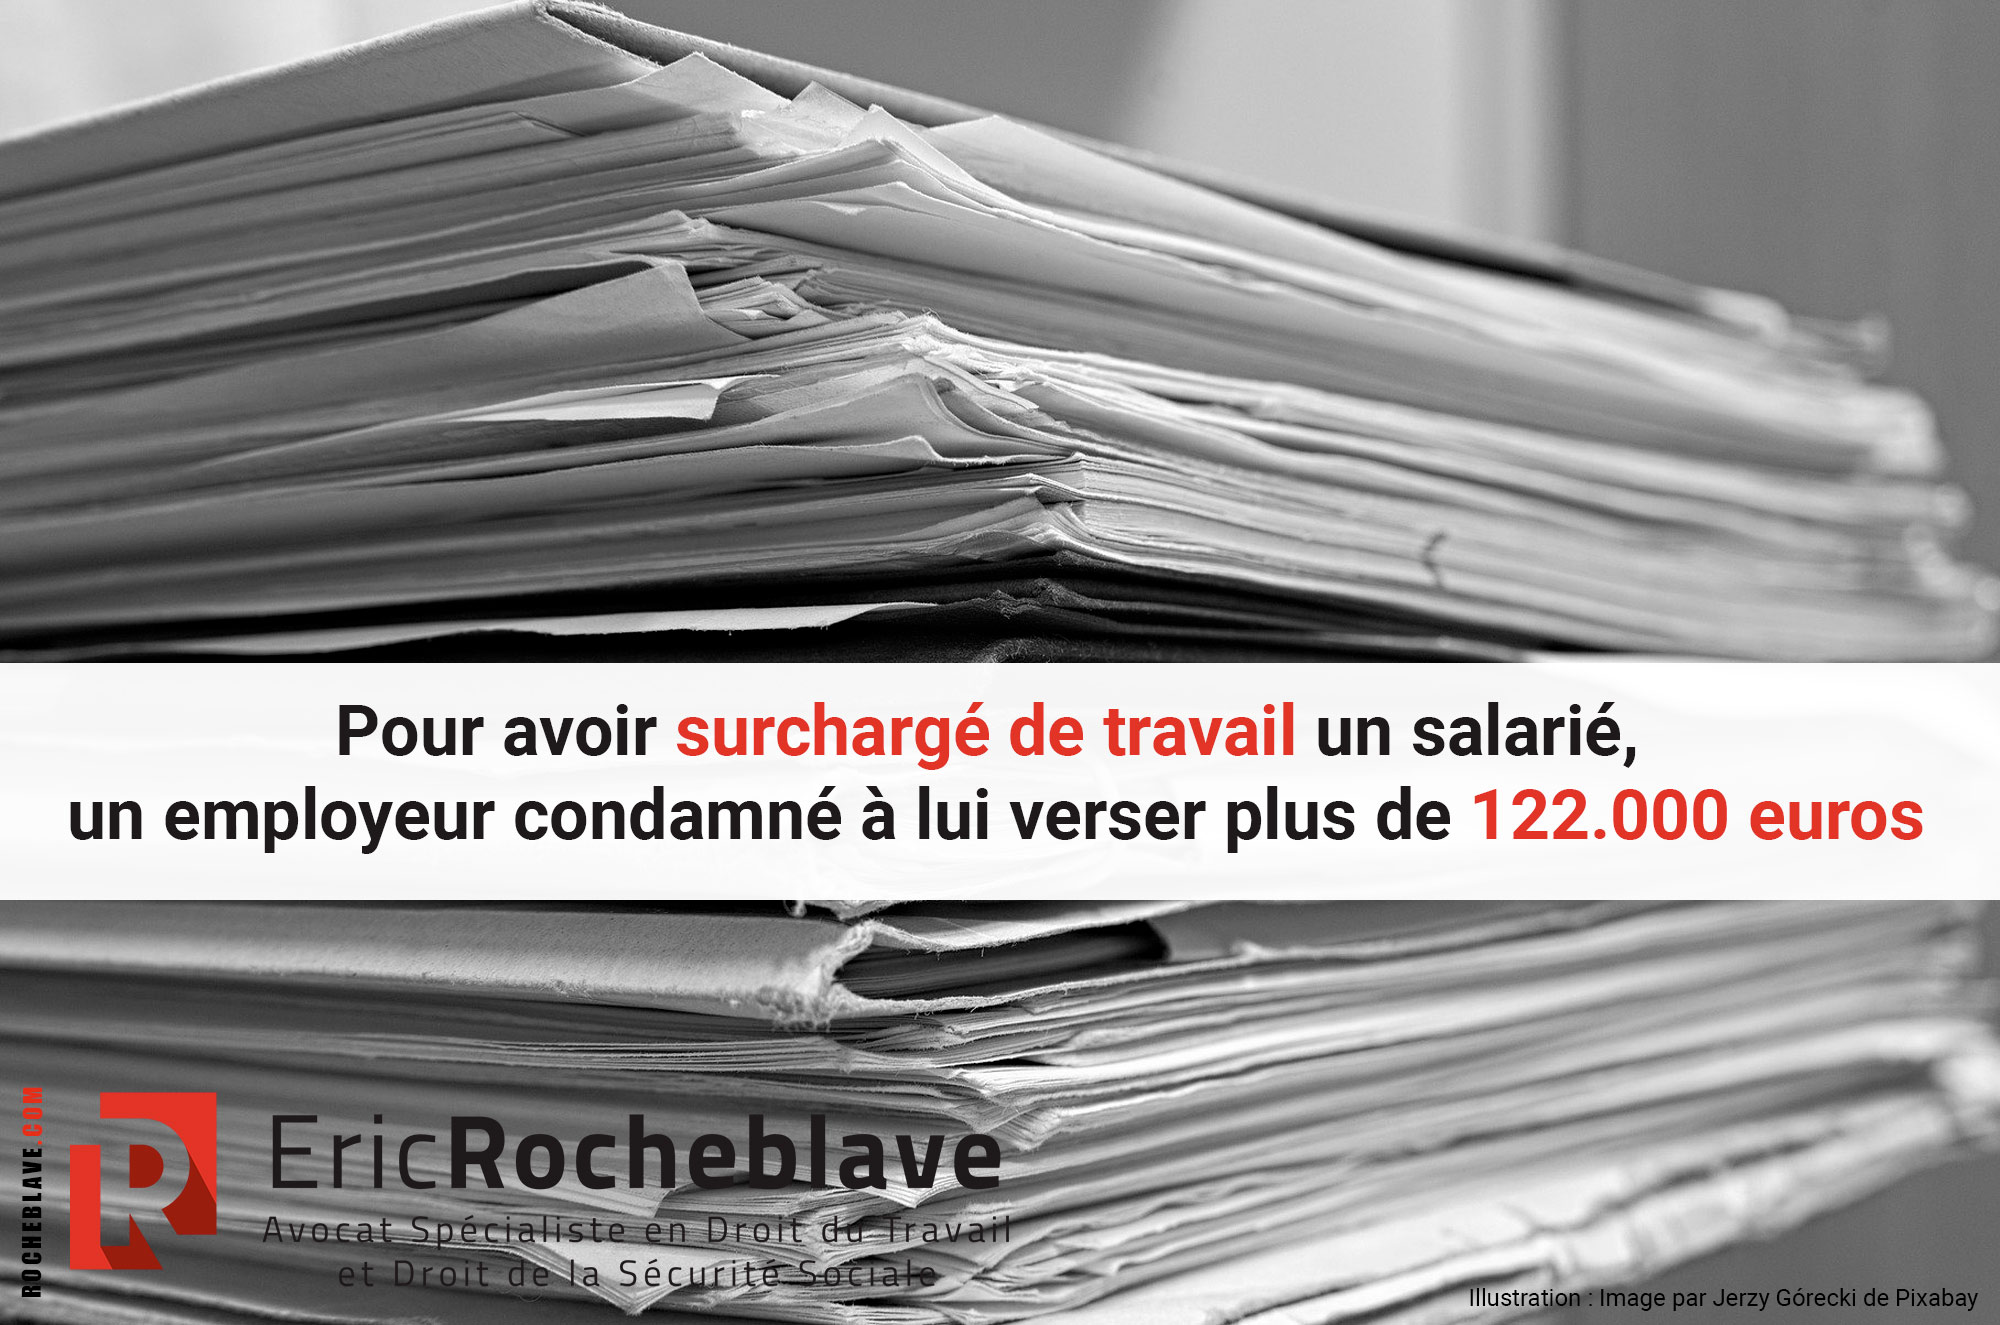 Pour avoir surchargé de travail un salarié, un employeur condamné à lui verser plus de 122.000 euros